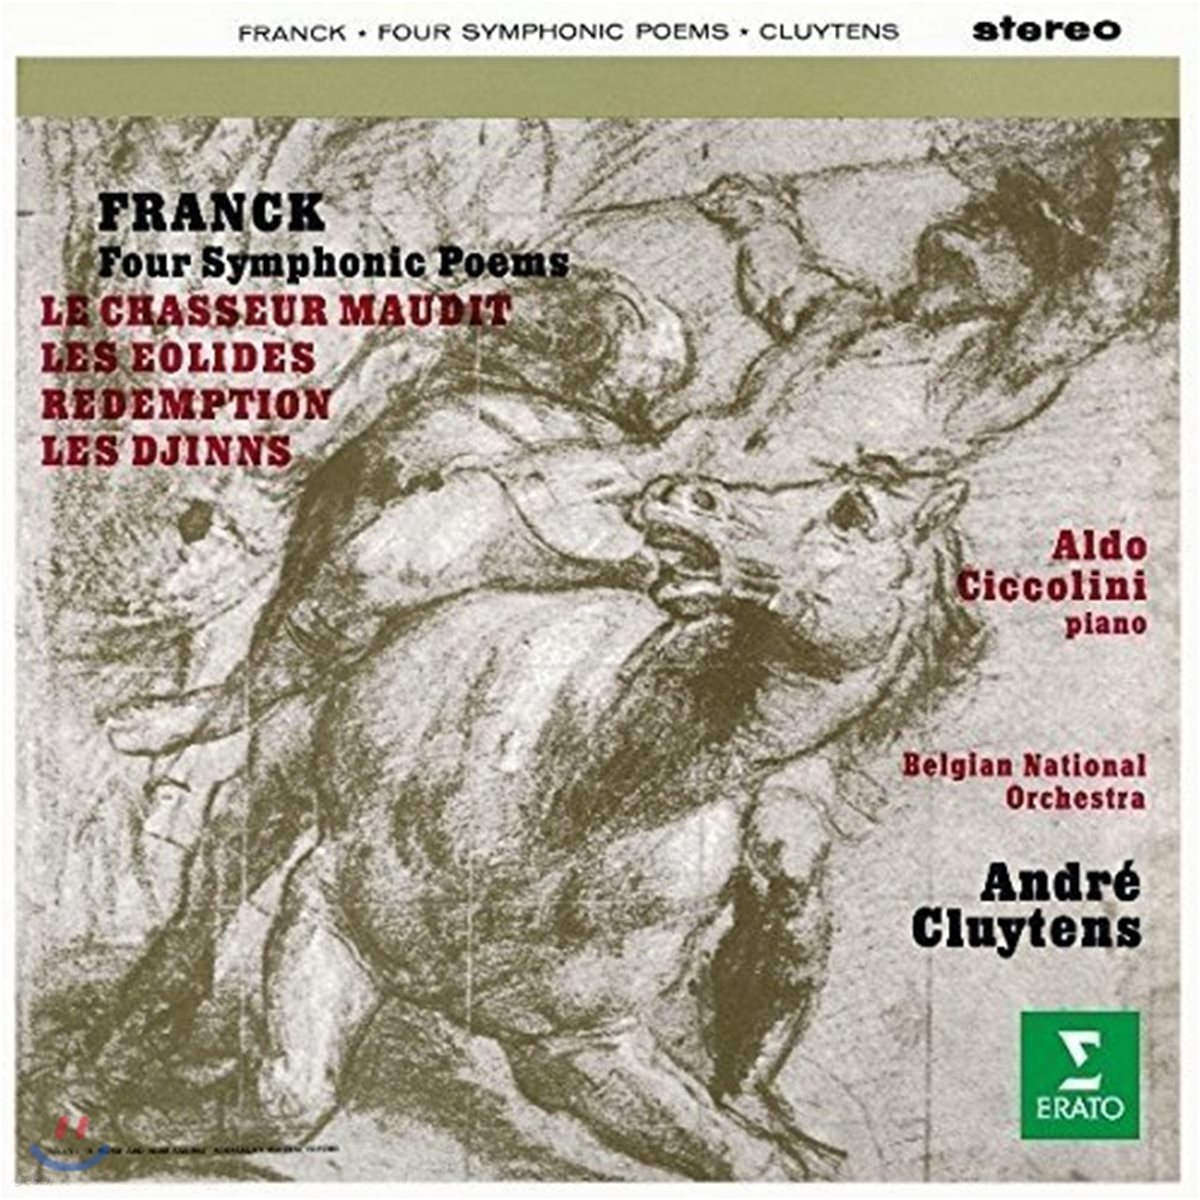 Andre Cluytens 프랑크: 교향시 '저주받은 사냥꾼', '에올리드', '구원', '귀신' (Franck: Four Symphonic Poems)